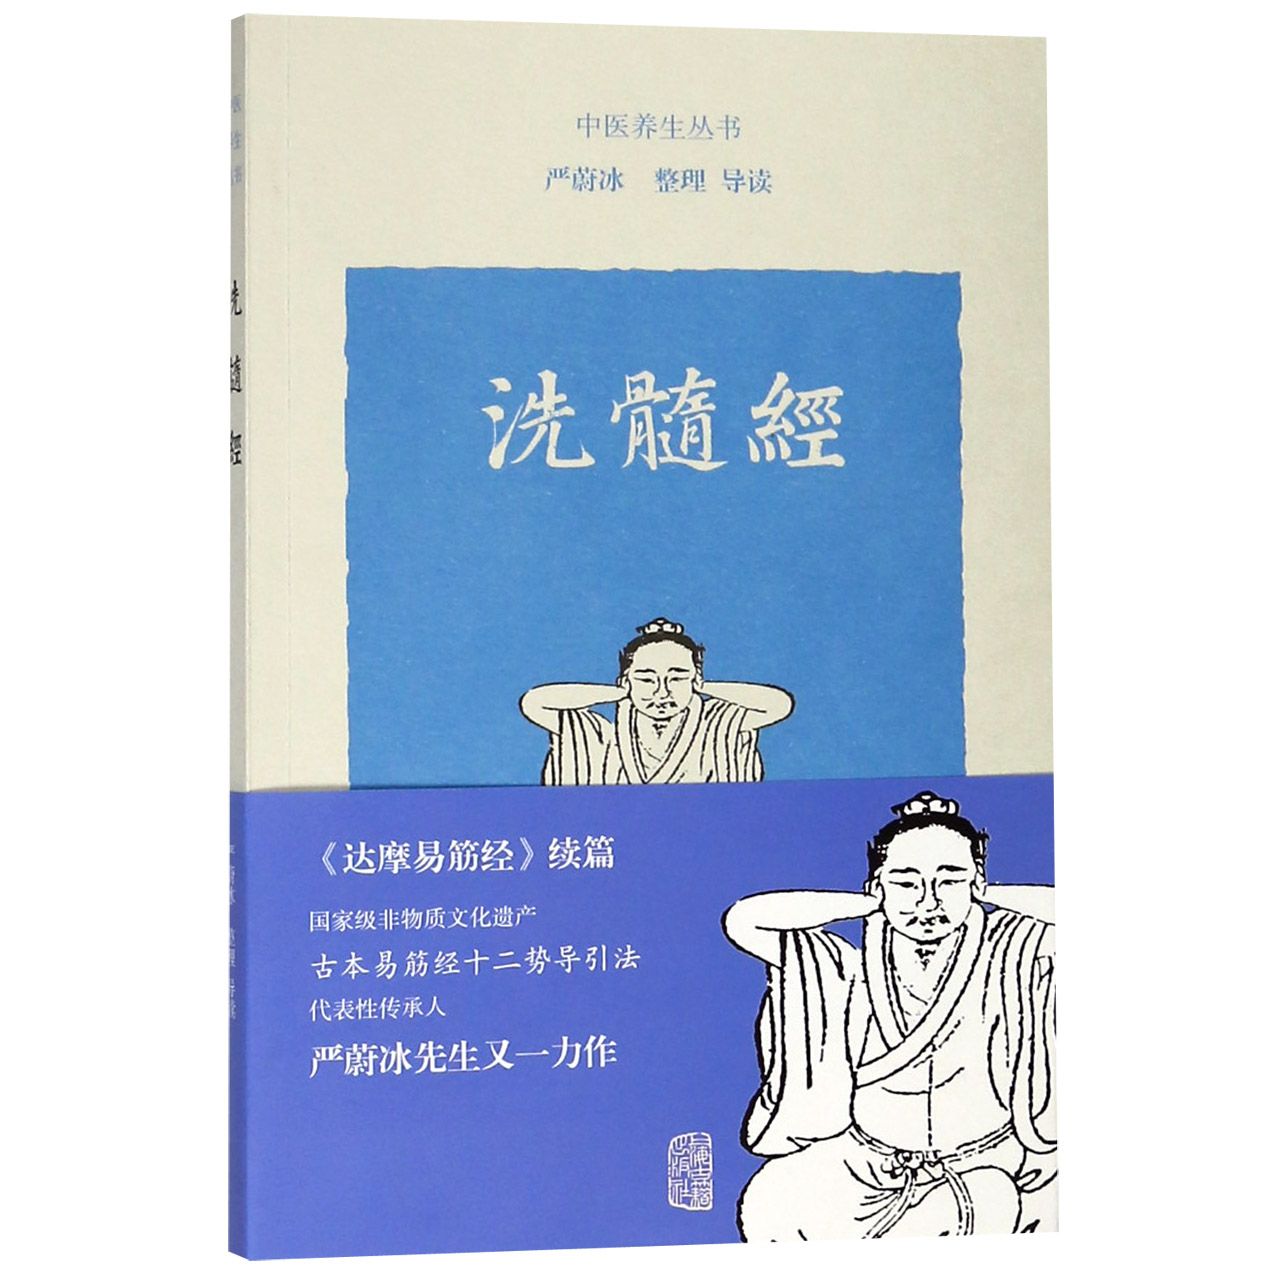 正版图书洗髓经/中医养生丛书整理上海古籍出版社9787532589142